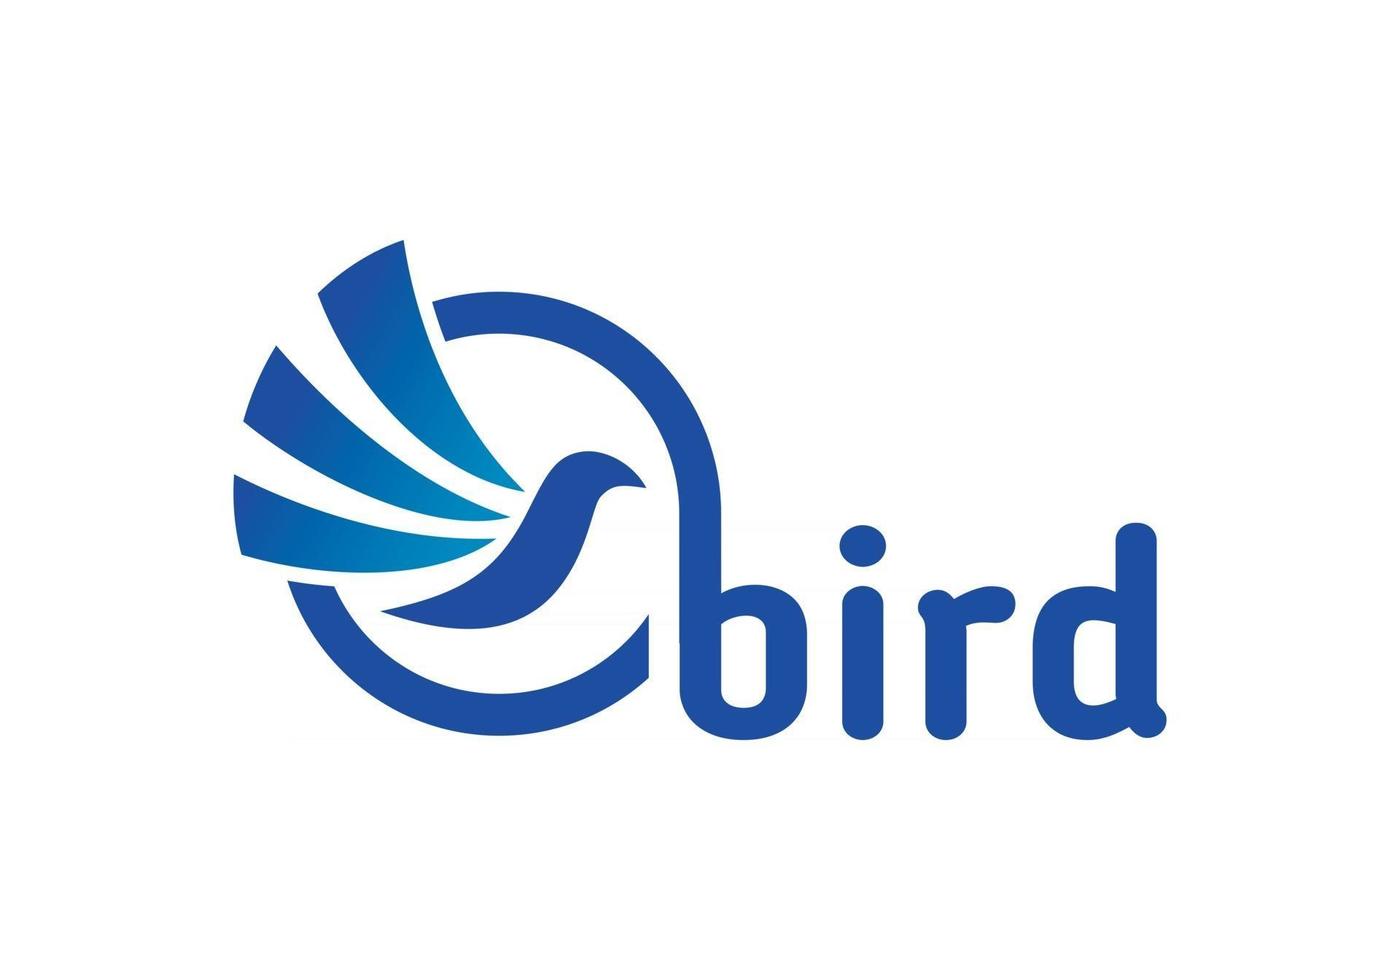 formato abstrato pássaro logotipo design ilustração vetorial eps, adequado para suas necessidades de design, logotipo, ilustração, animação, etc. vetor